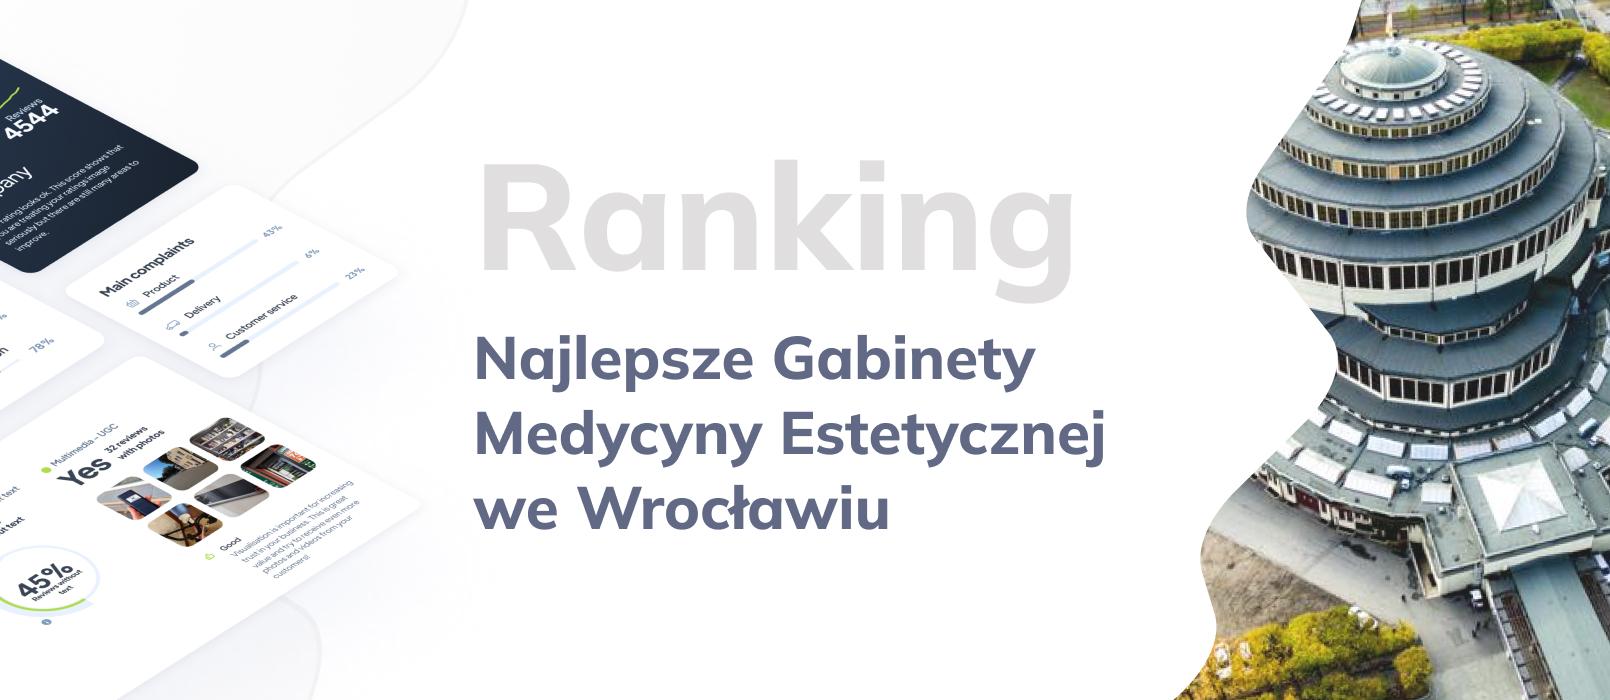 Najlepsze gabinety medycyny estetycznej we Wrocławiu – TOP 10: Ranking opinii klientów